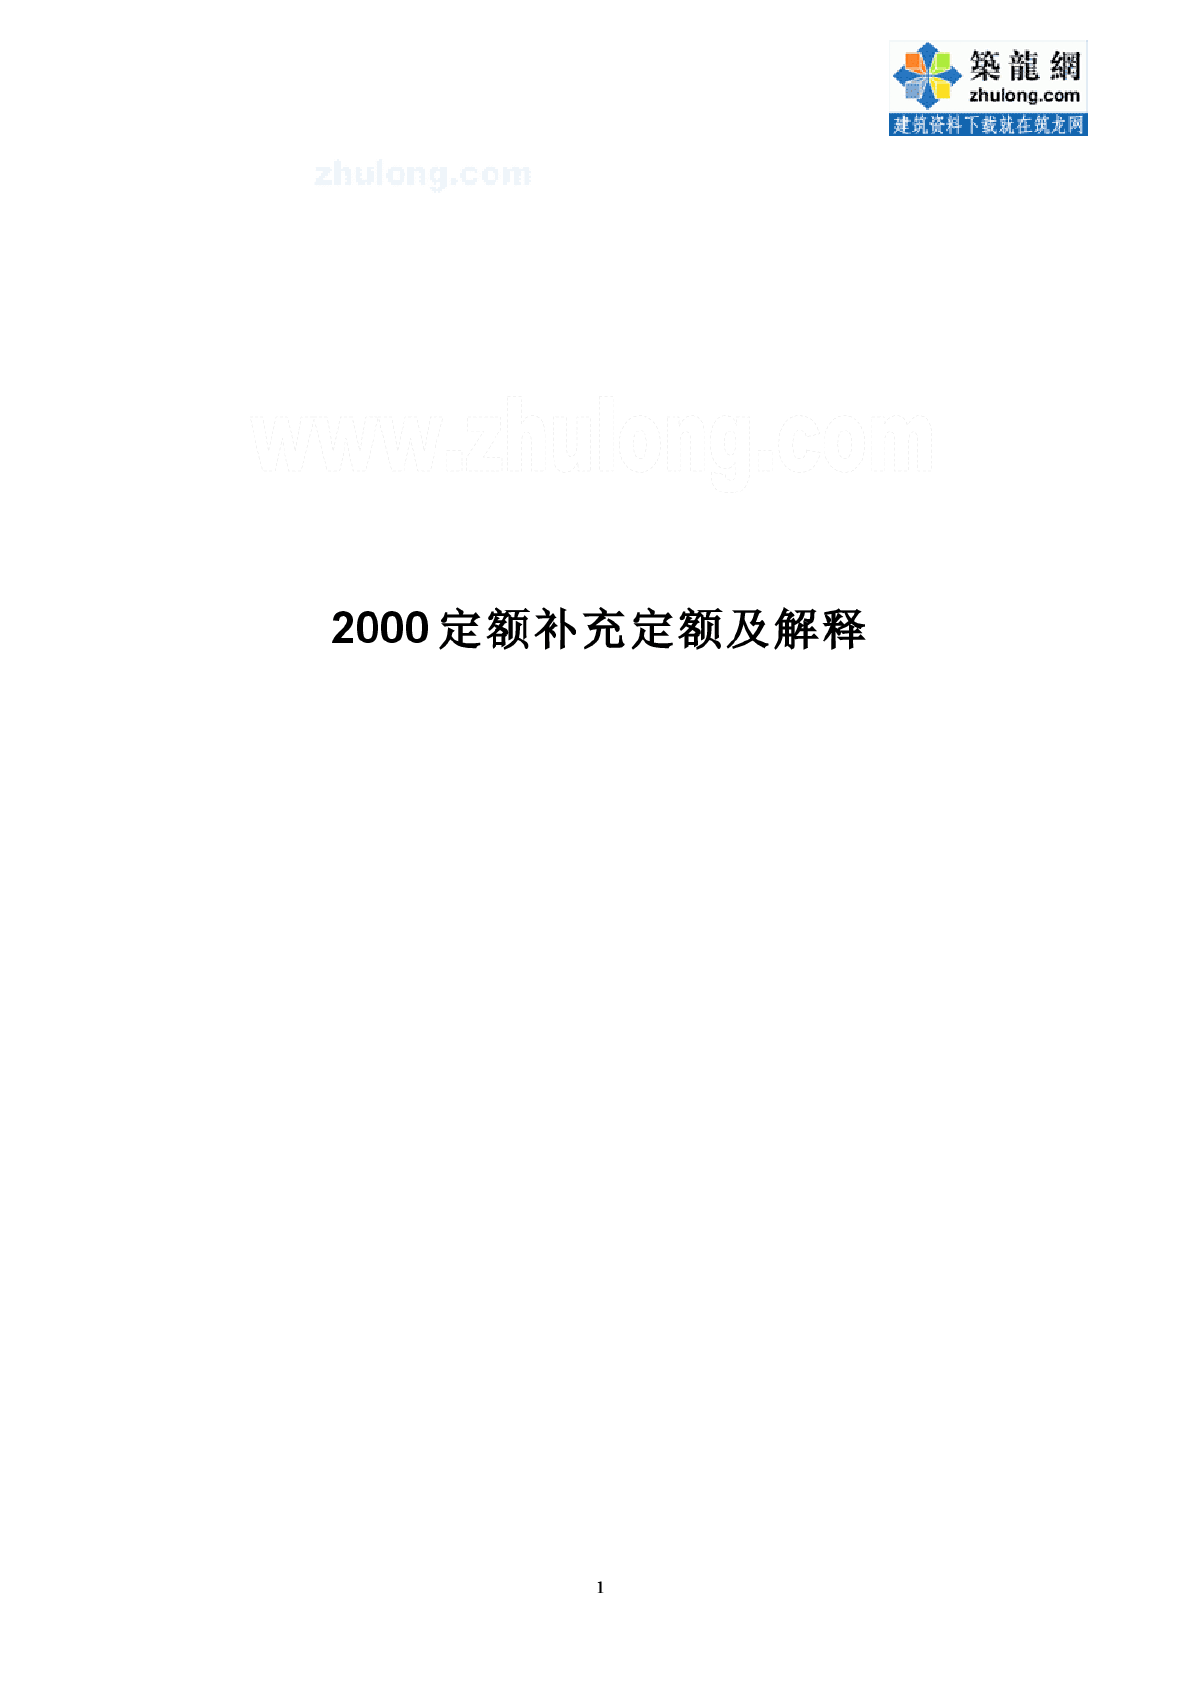 上海市建筑、装饰及房屋修缮工程预算定额(2000)补充定额)